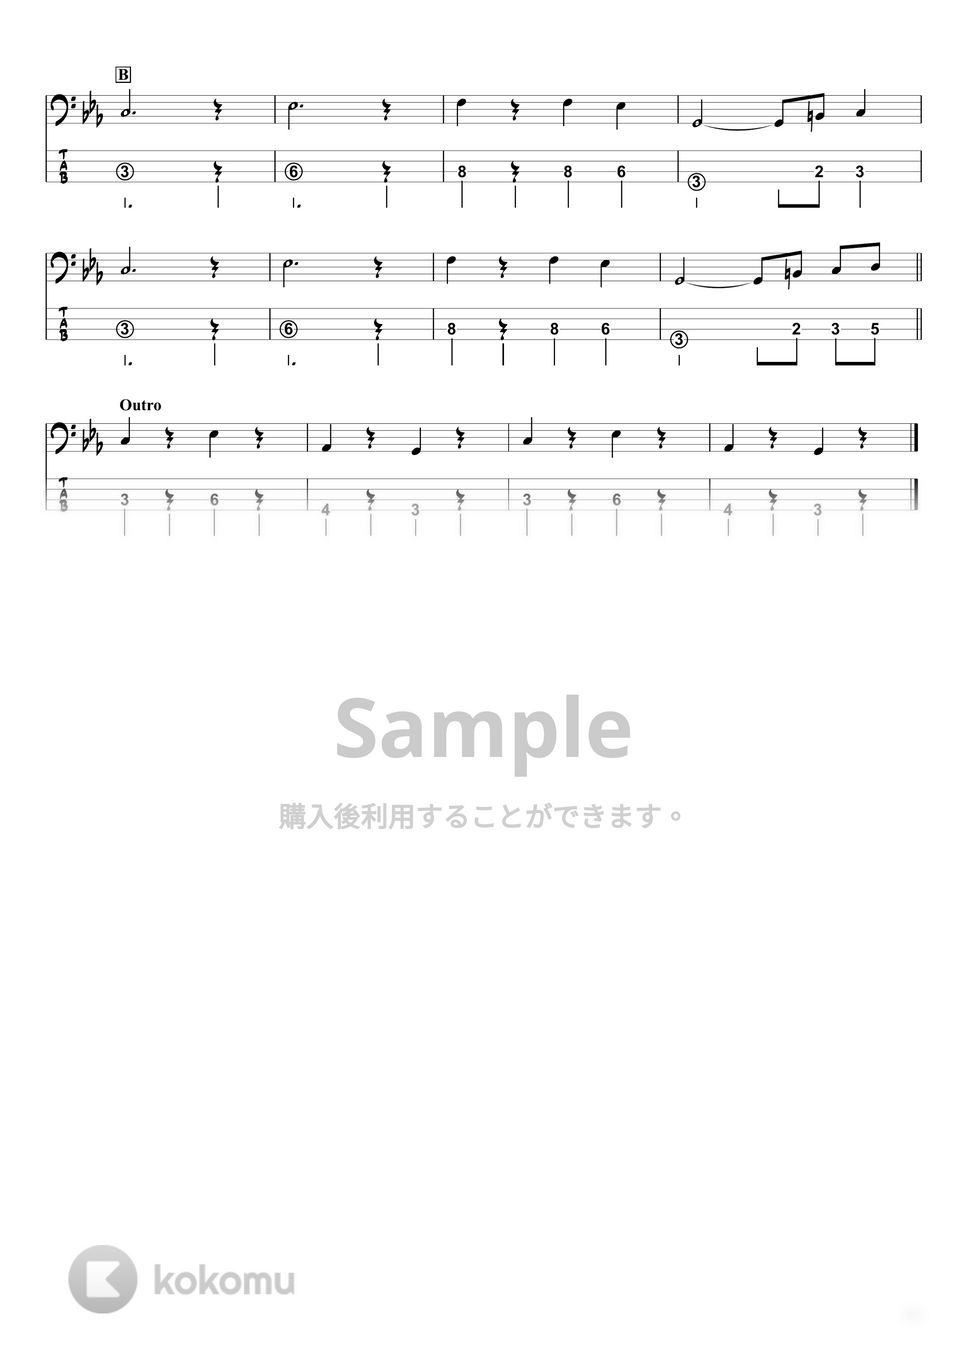 Kanaria - MIRA (ベースTAB譜☆4弦ベース対応) by swbass